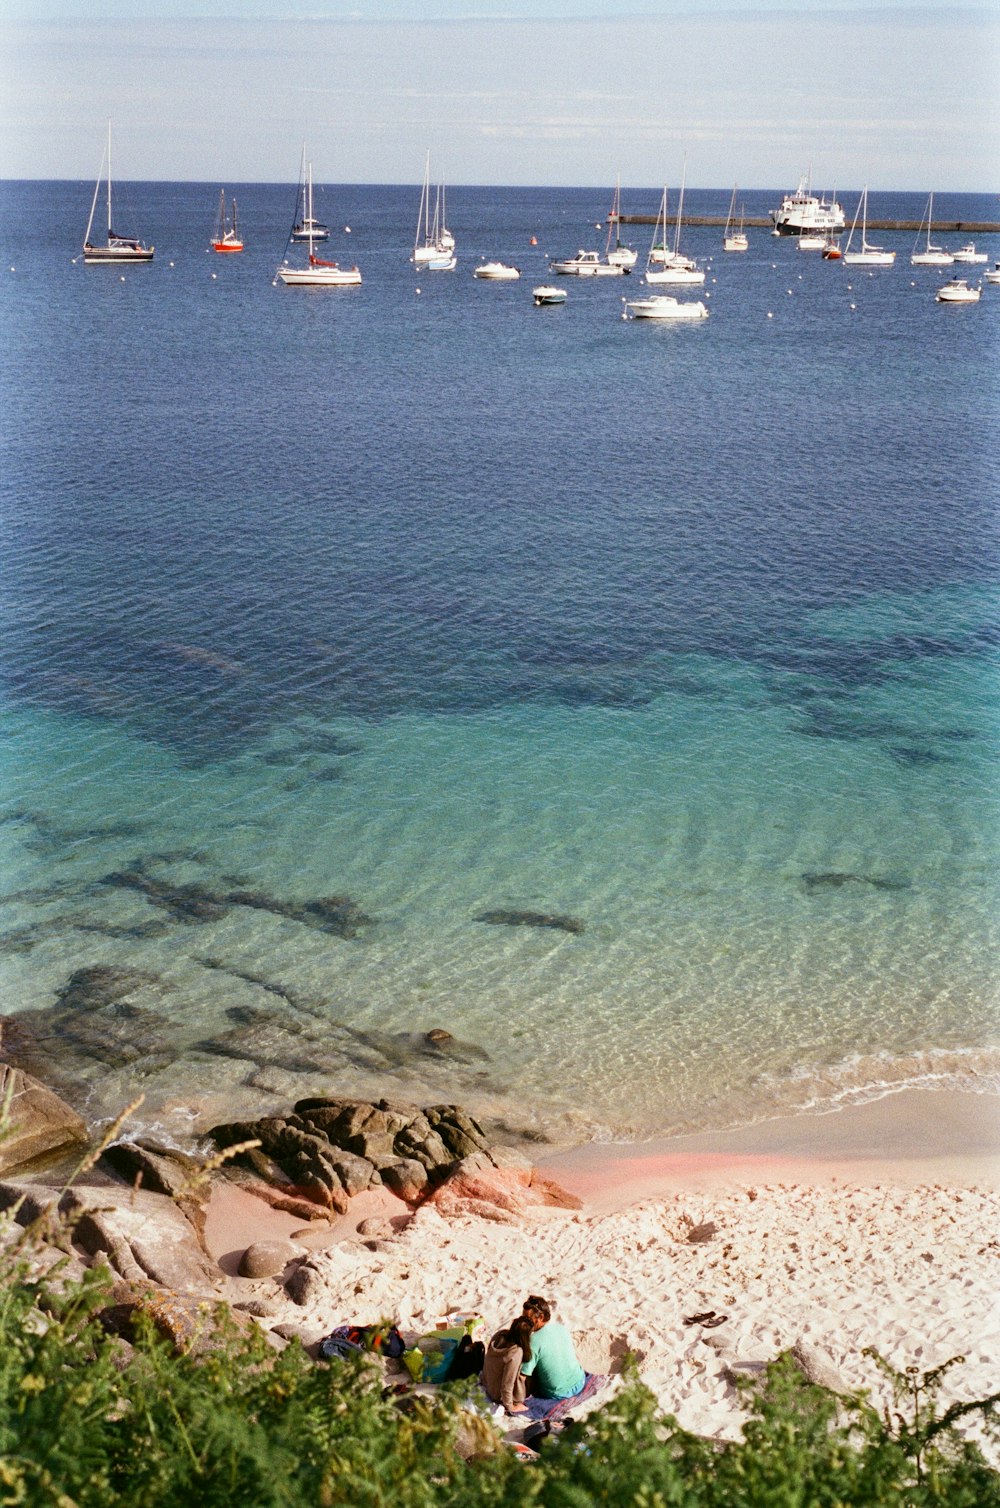 Un groupe de personnes assises sur une plage rocheuse avec des bateaux dans l’eau